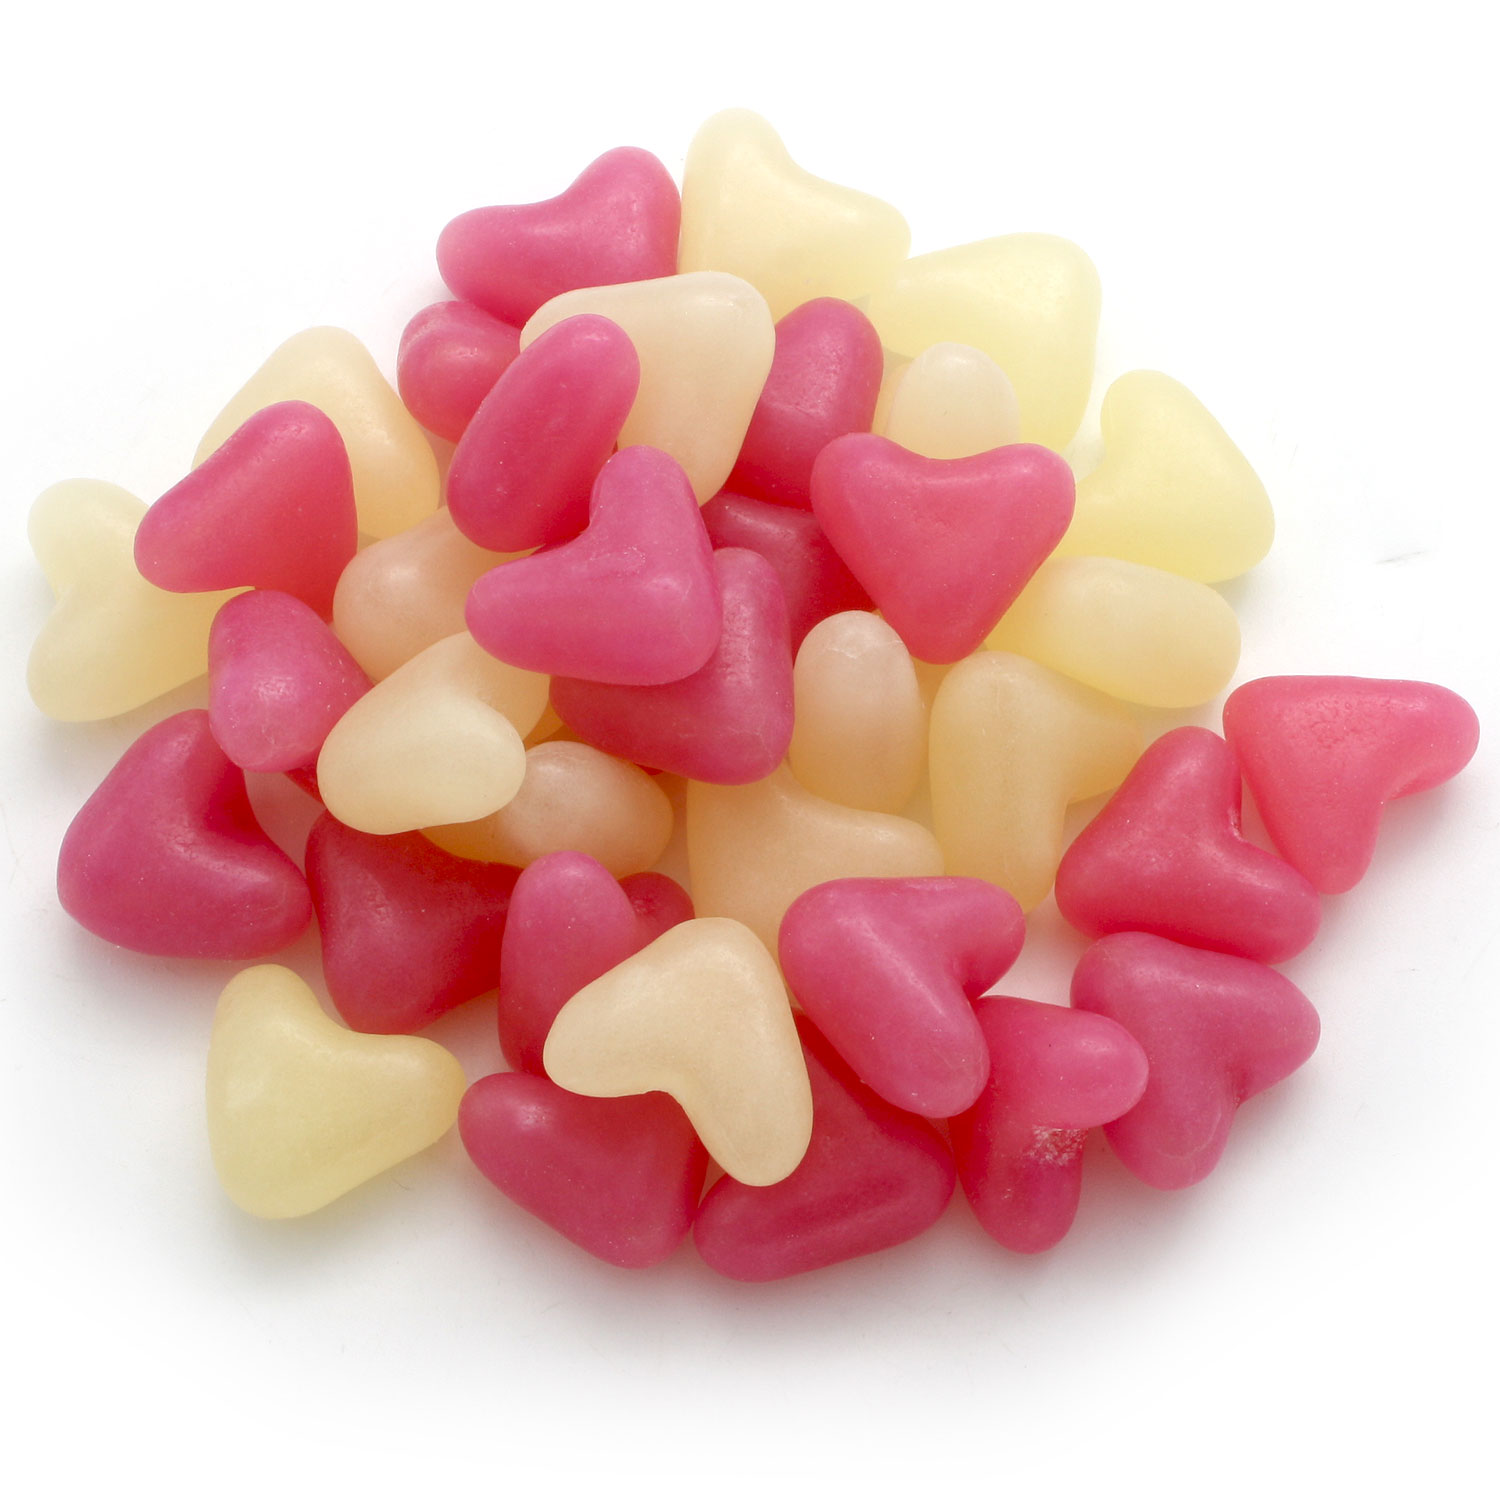 Jelly Bean Love Hearts